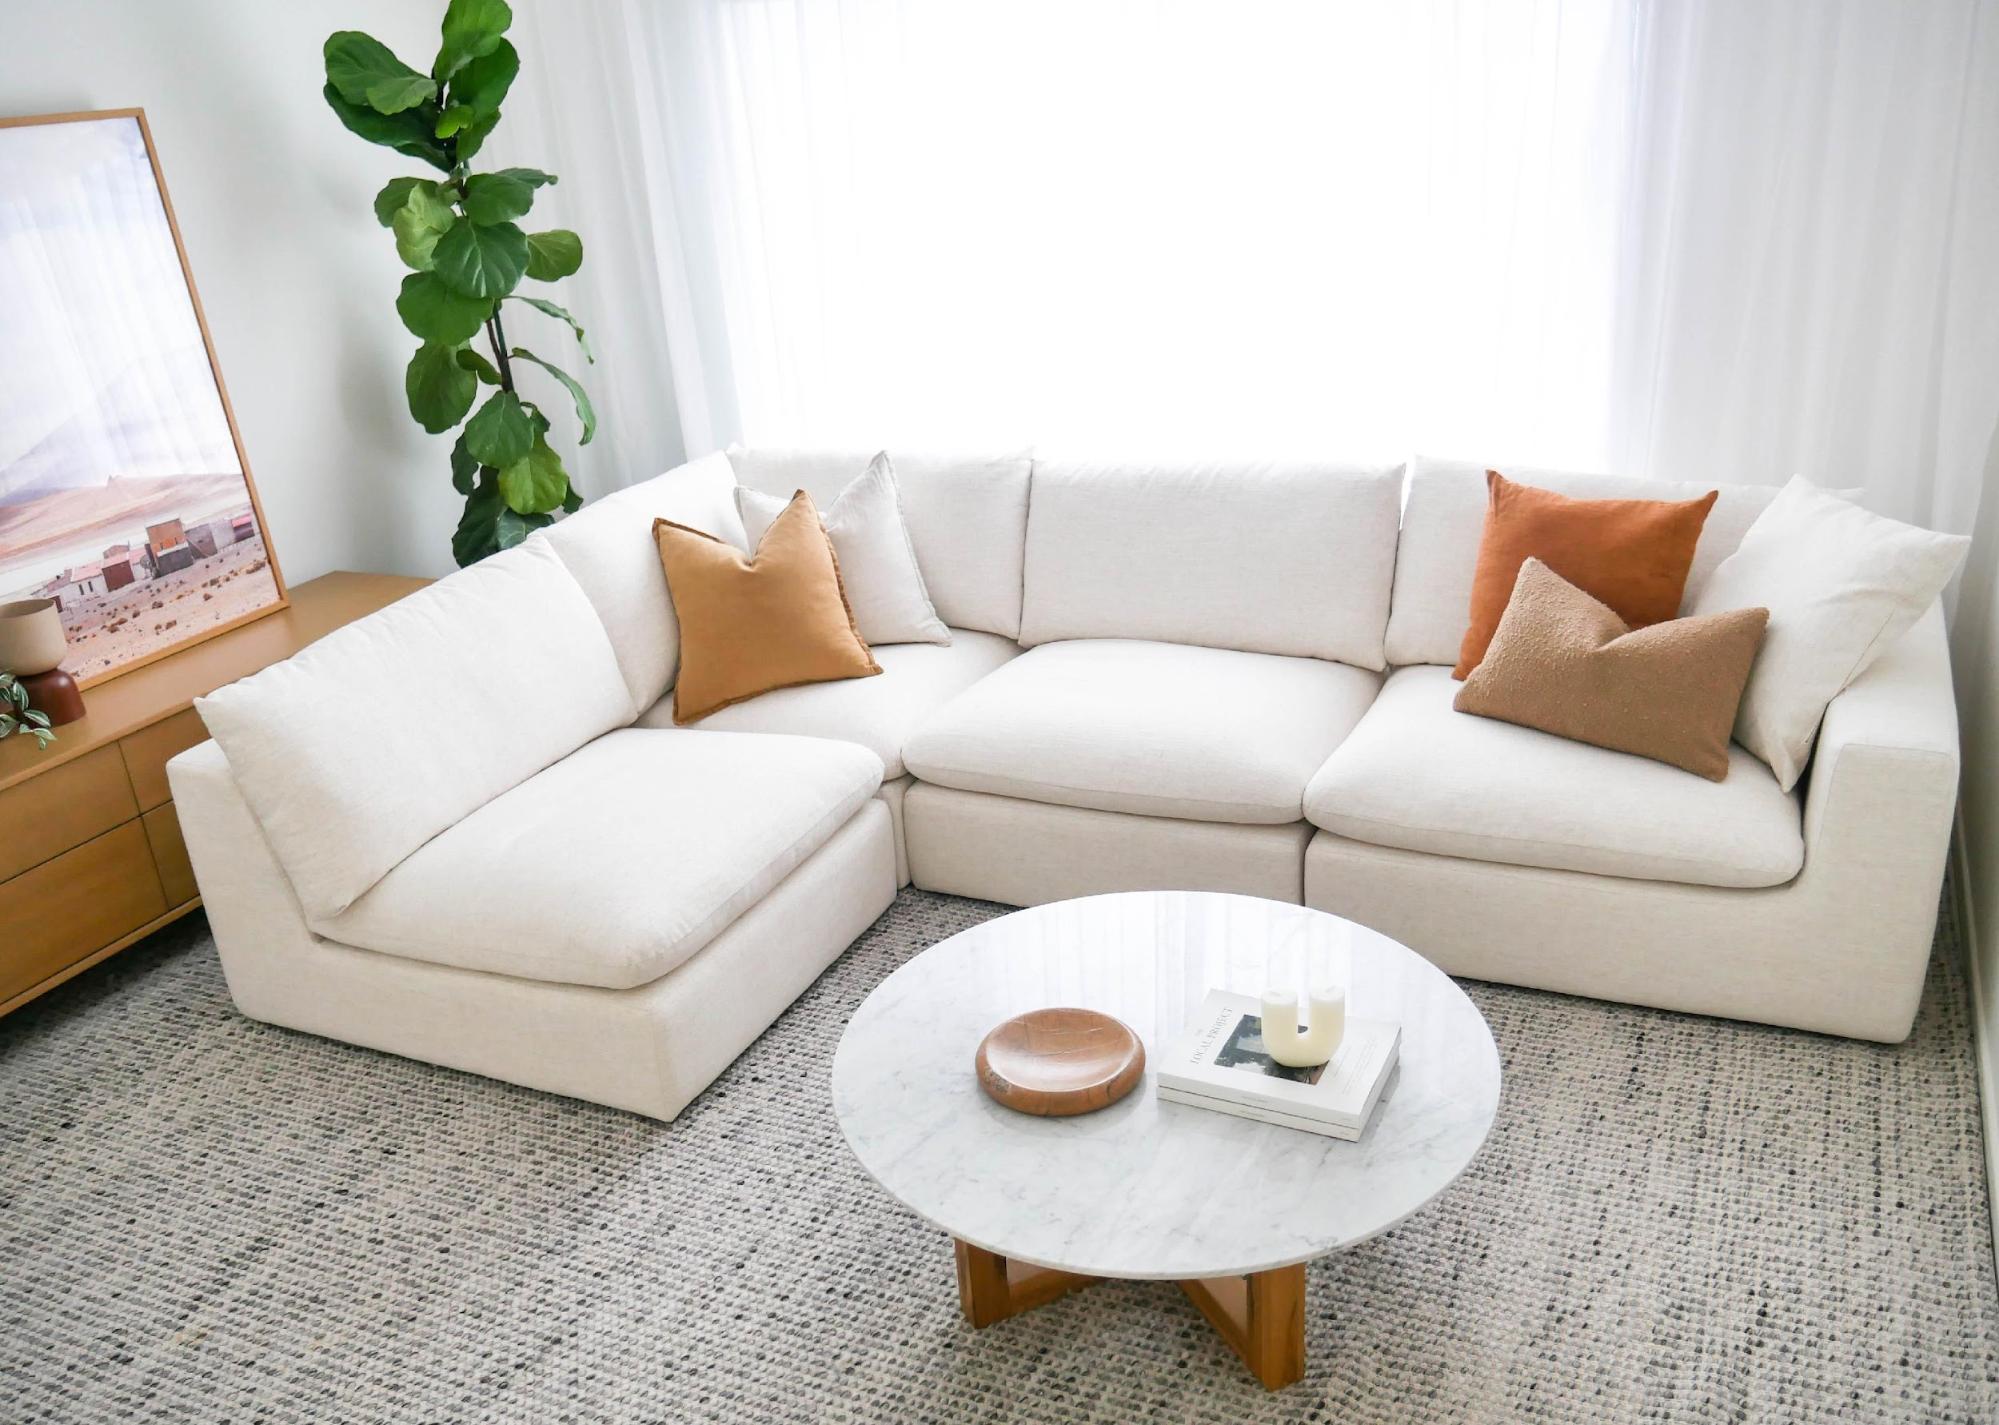 How To Keep White Sofa Clean